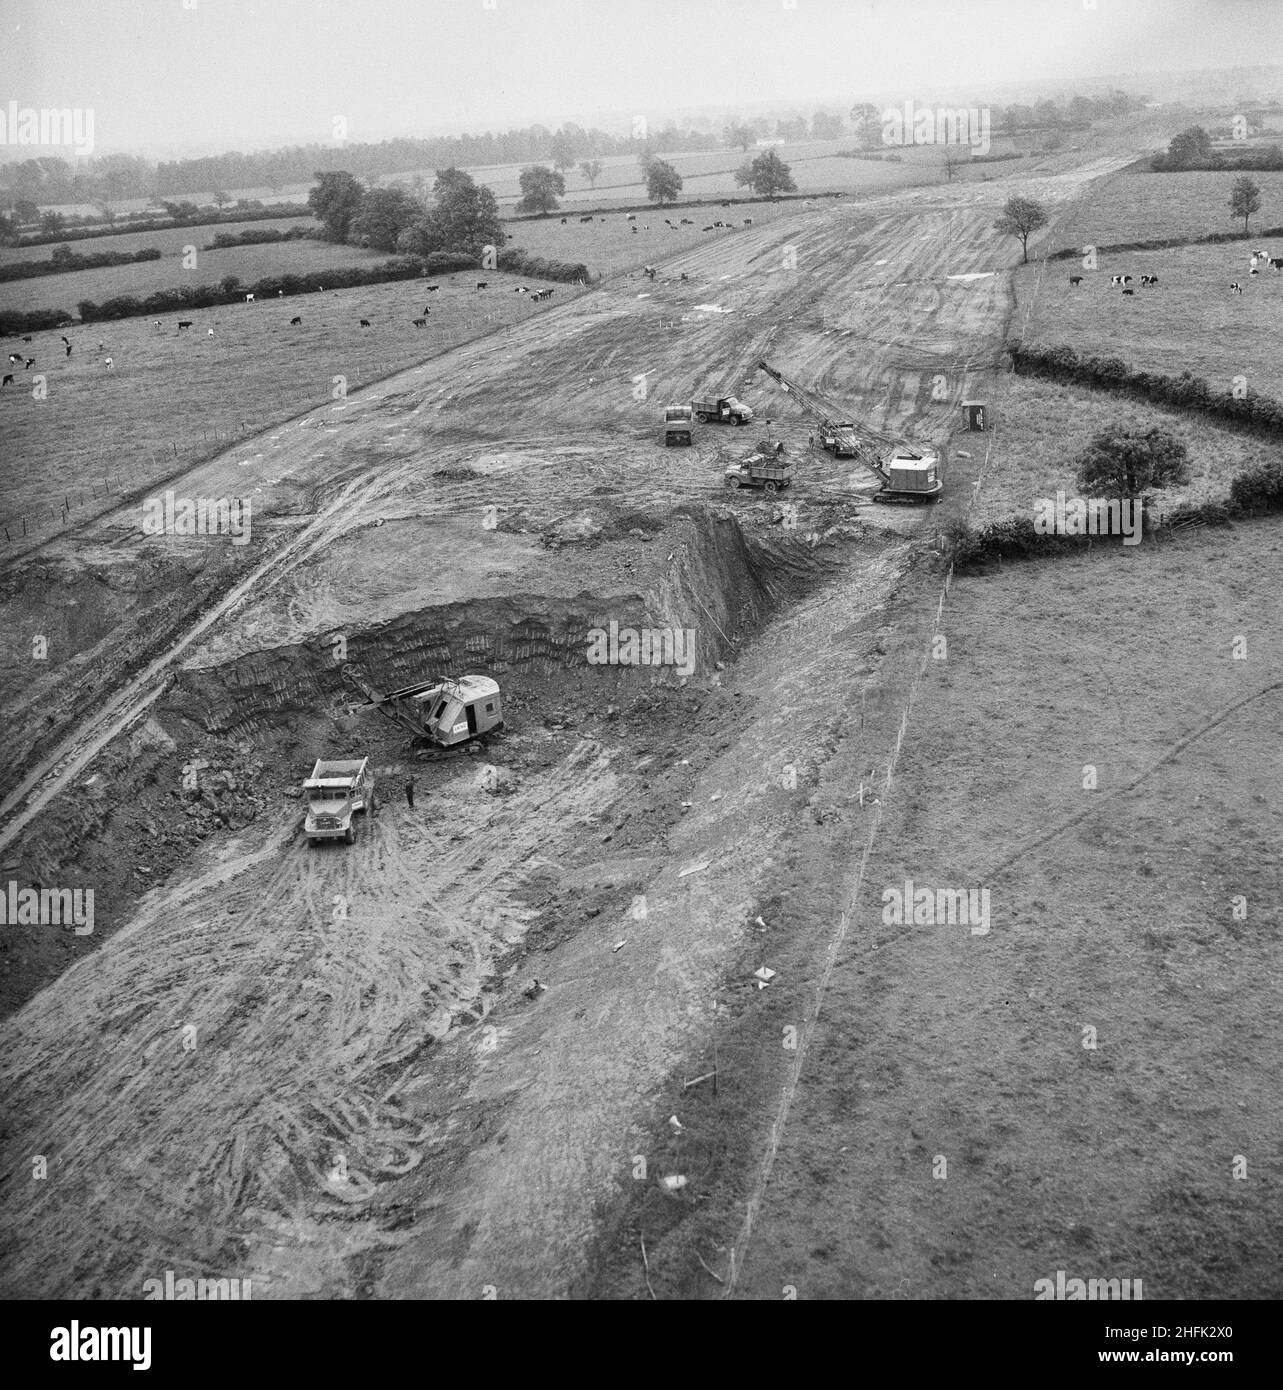 Luftaufnahme der Aushubarbeiten für den Bau der London to Yorkshire Motorway (M1), 10/06/1958. Eine Luftaufnahme von Baufahrzeugen, die Aushubarbeiten für den Bau der London to Yorkshire Motorway durchführen (M1). In diesem Bild lädt eine 43 RB-Schaufel im Vordergrund einen Euclid-Heckkipper. Im Hintergrund lädt eine Dragline mit 22 RB 5-Tonnen-Lkw. Stockfoto